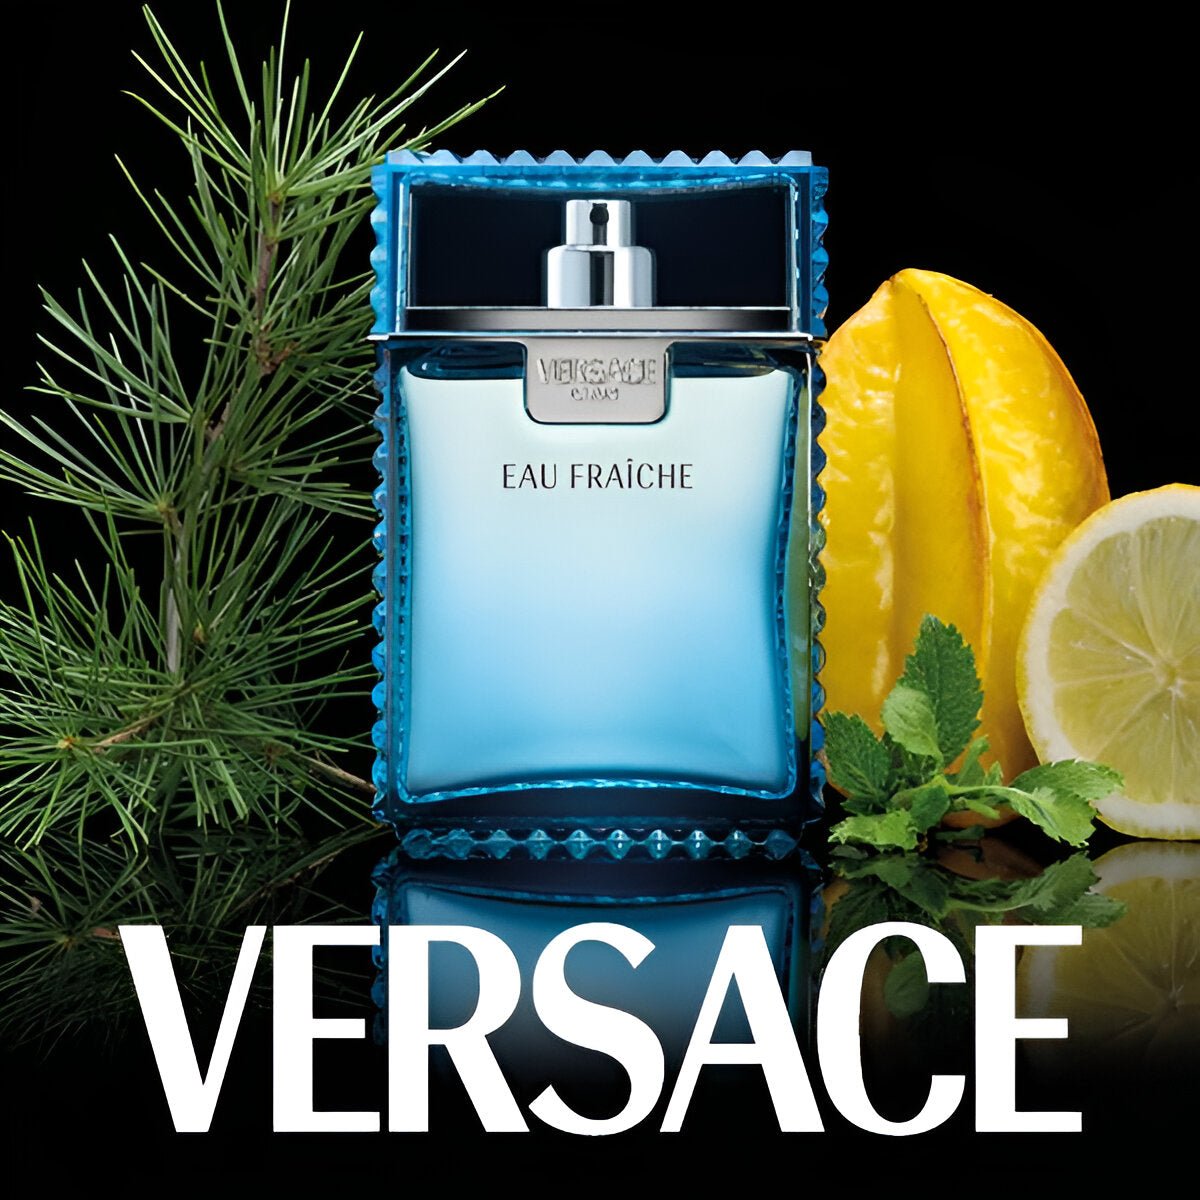 Versace Man Eau Fraiche EDT | My Perfume Shop Australia